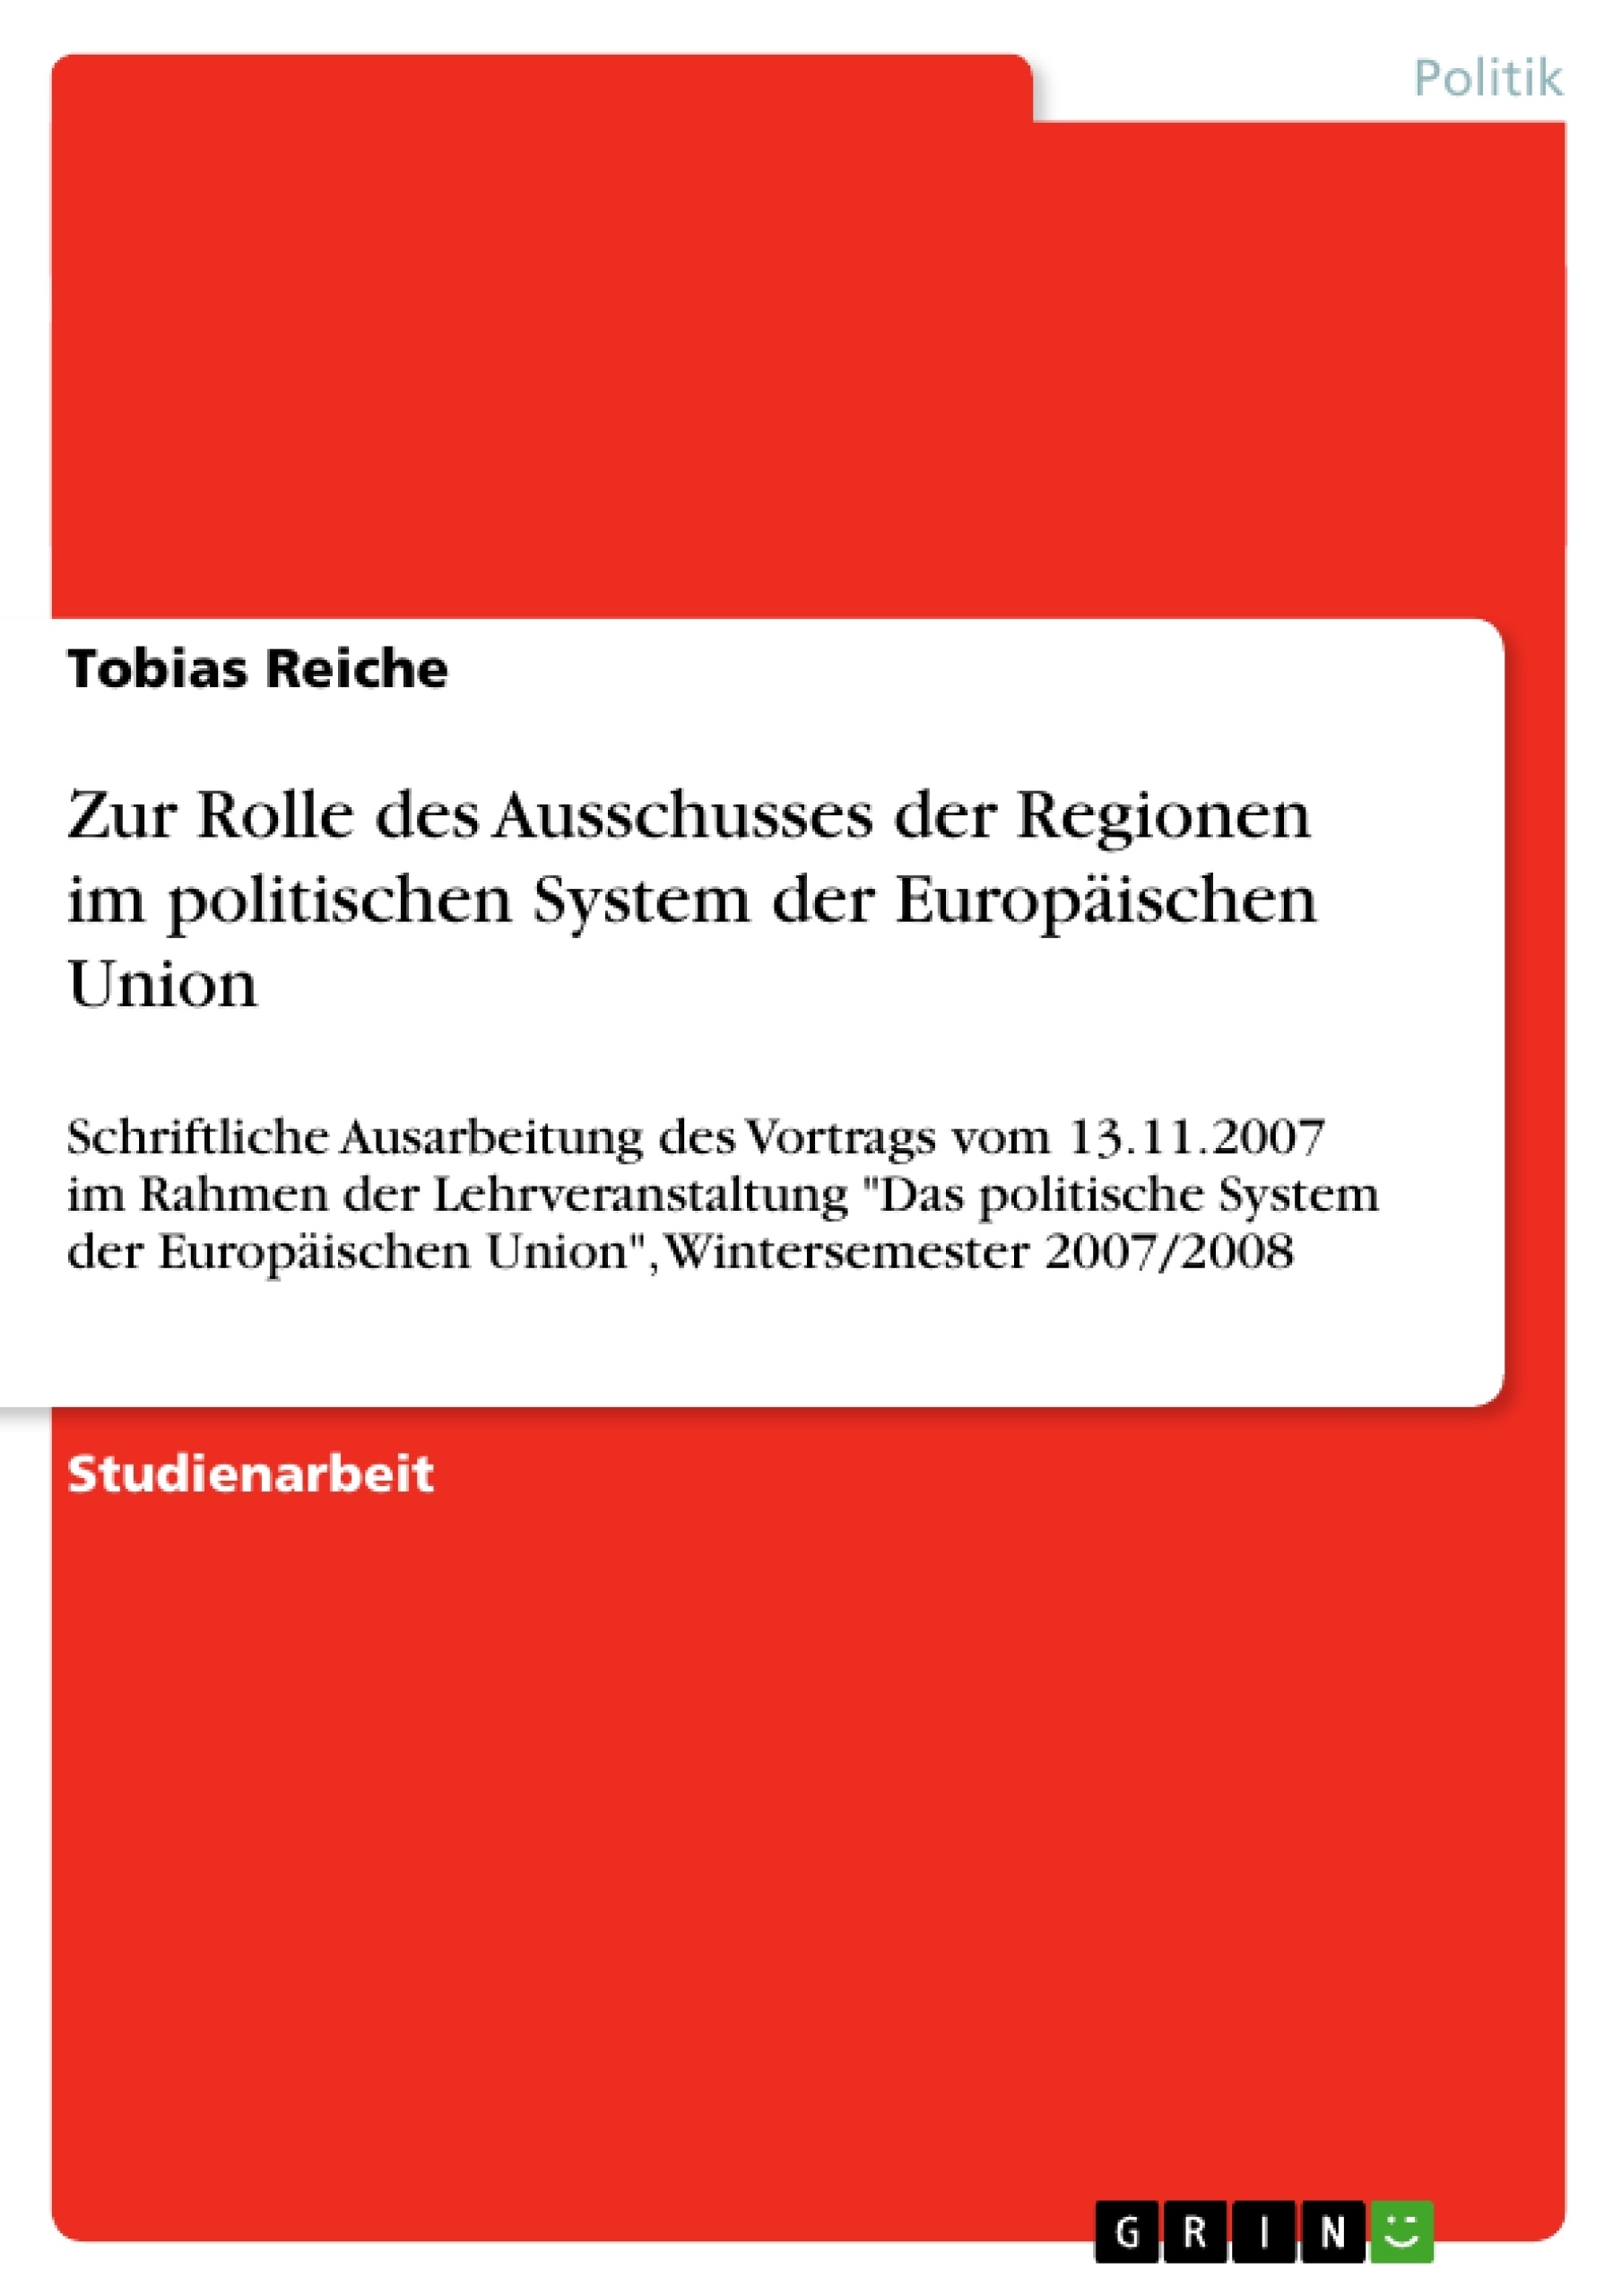 Titel: Zur Rolle des Ausschusses der Regionen im politischen System der Europäischen Union